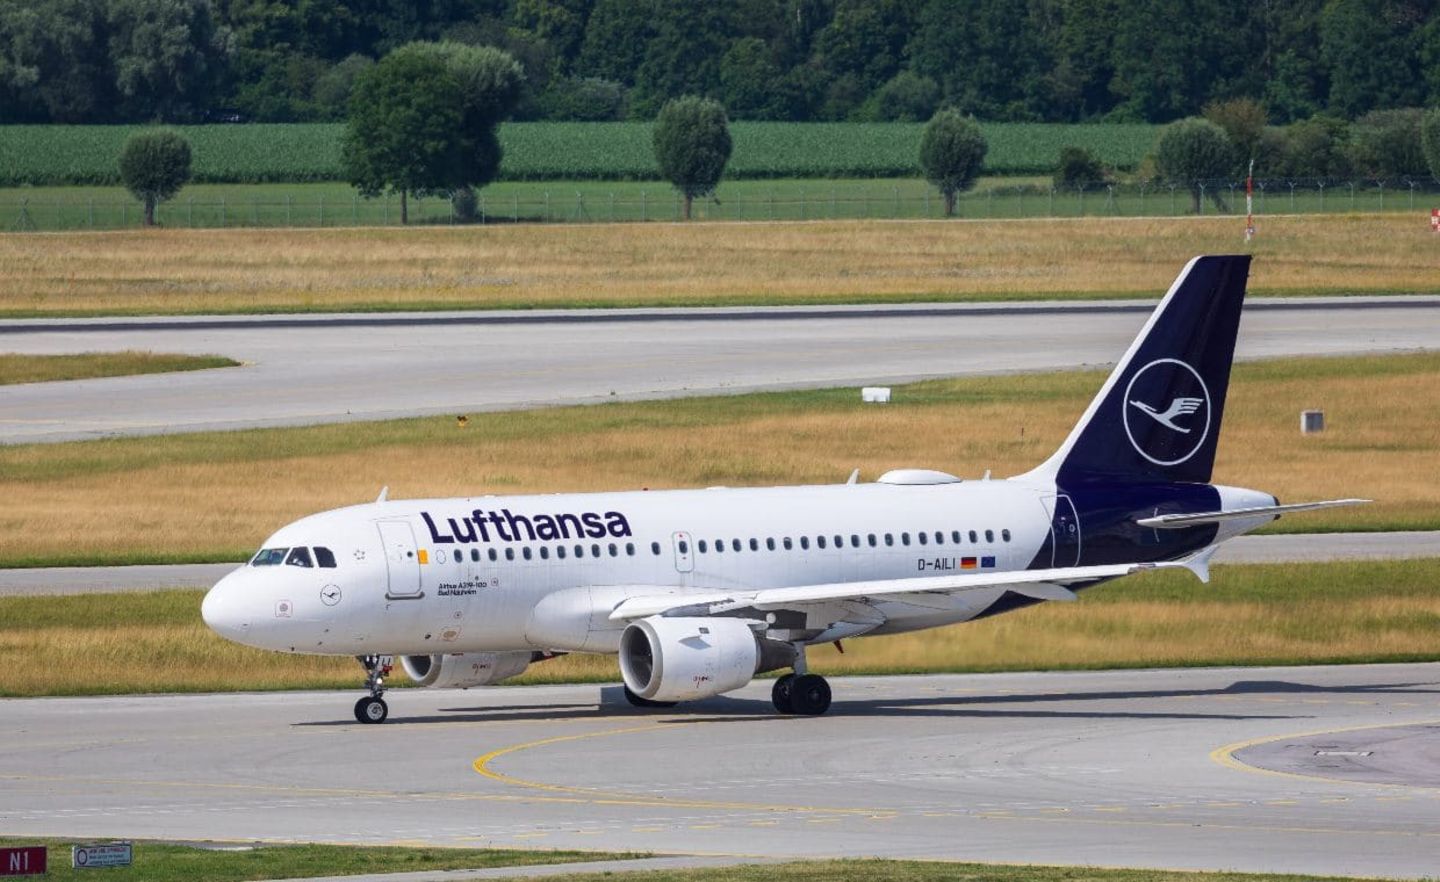 Als prominentester Konzern nutzte die Lufthansa den WSF